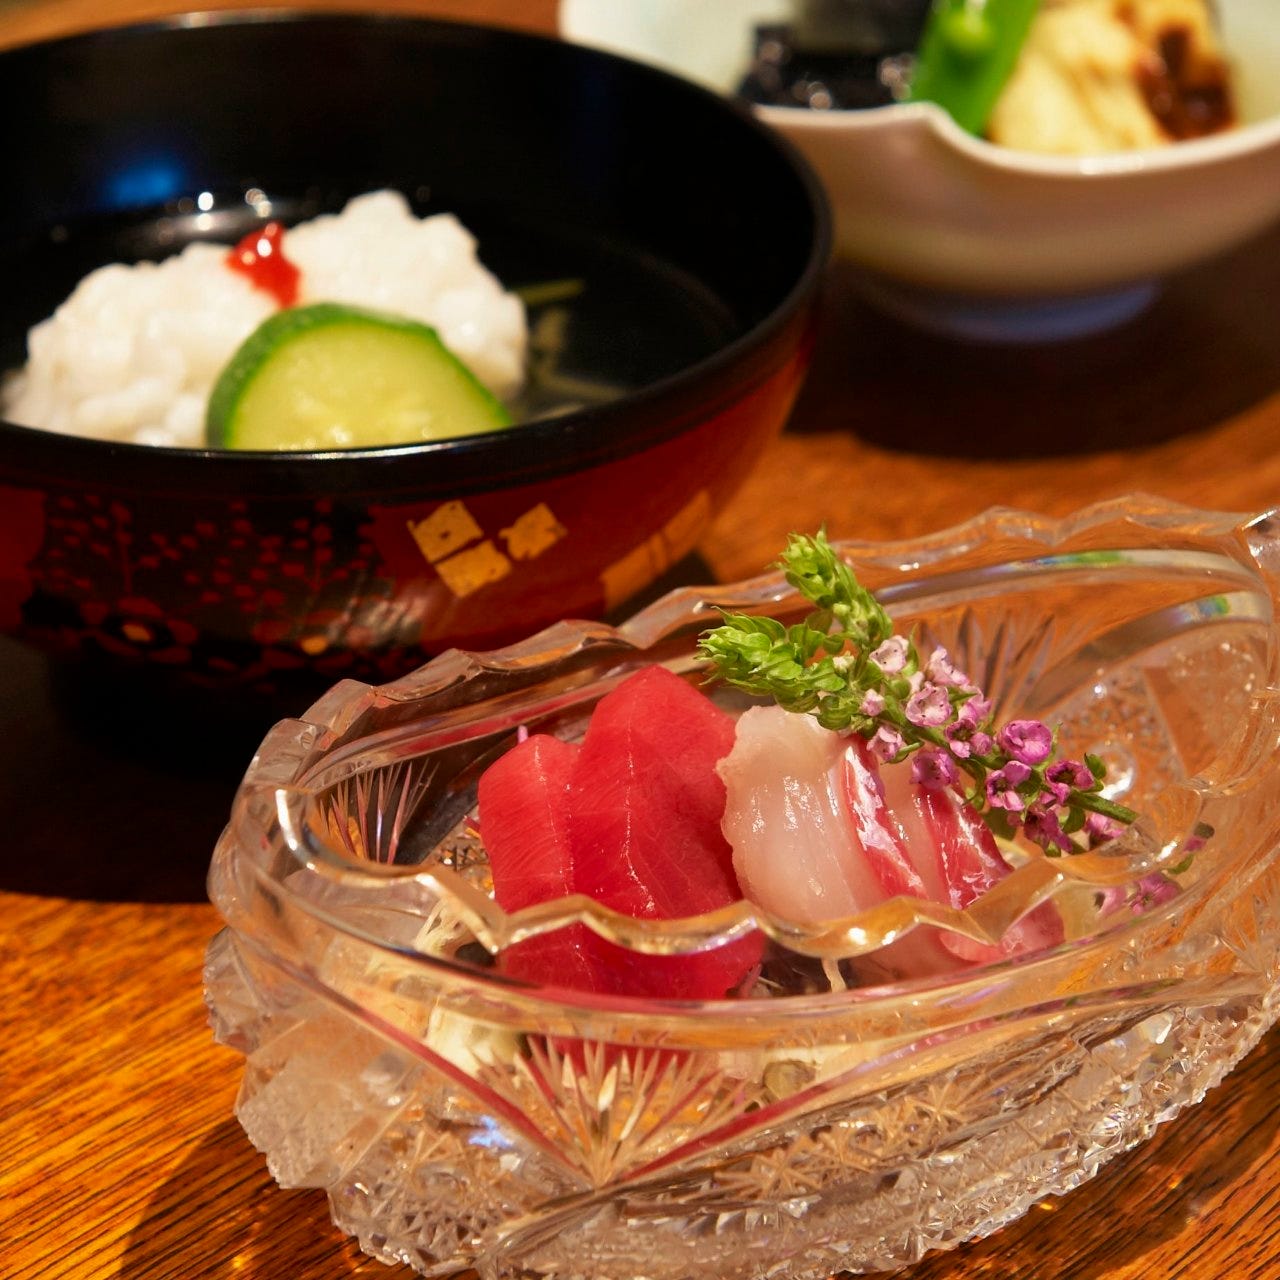 正統派の和食を贅沢に堪能
日本の四季を味わう夜の懐石コース